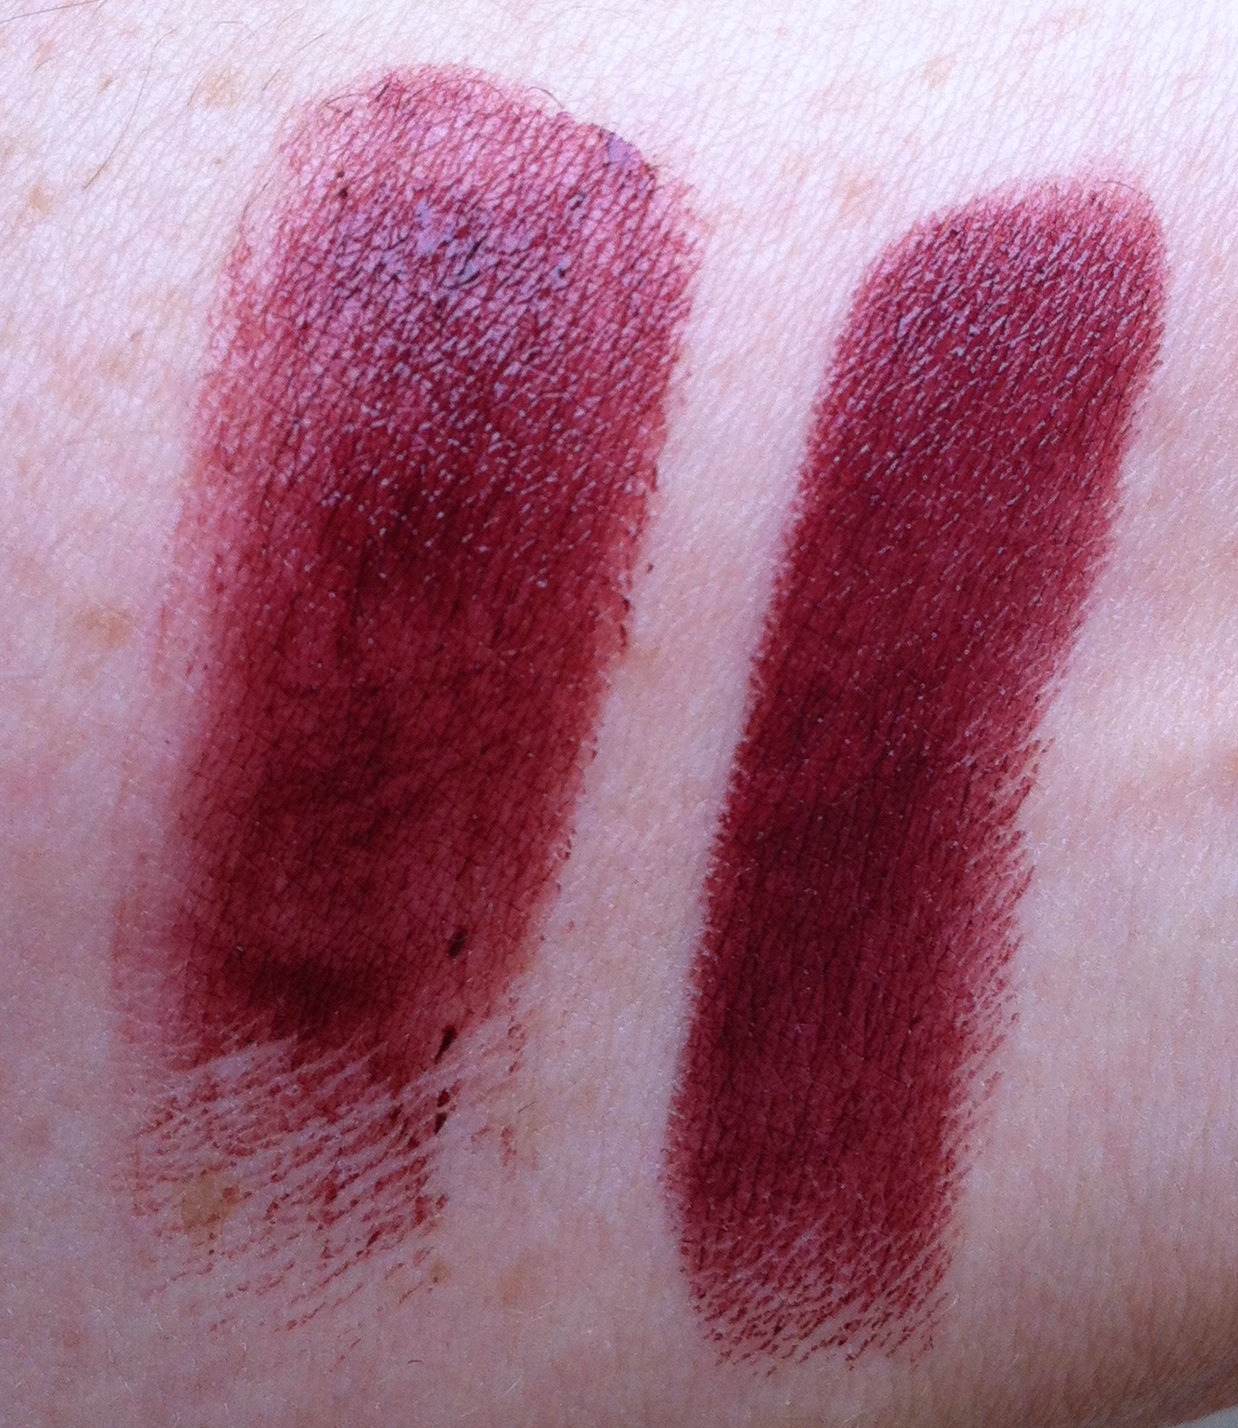 Make Up For Dolls: Vamp It! Chanel Rouge Noir (Hydrabase v Allure)